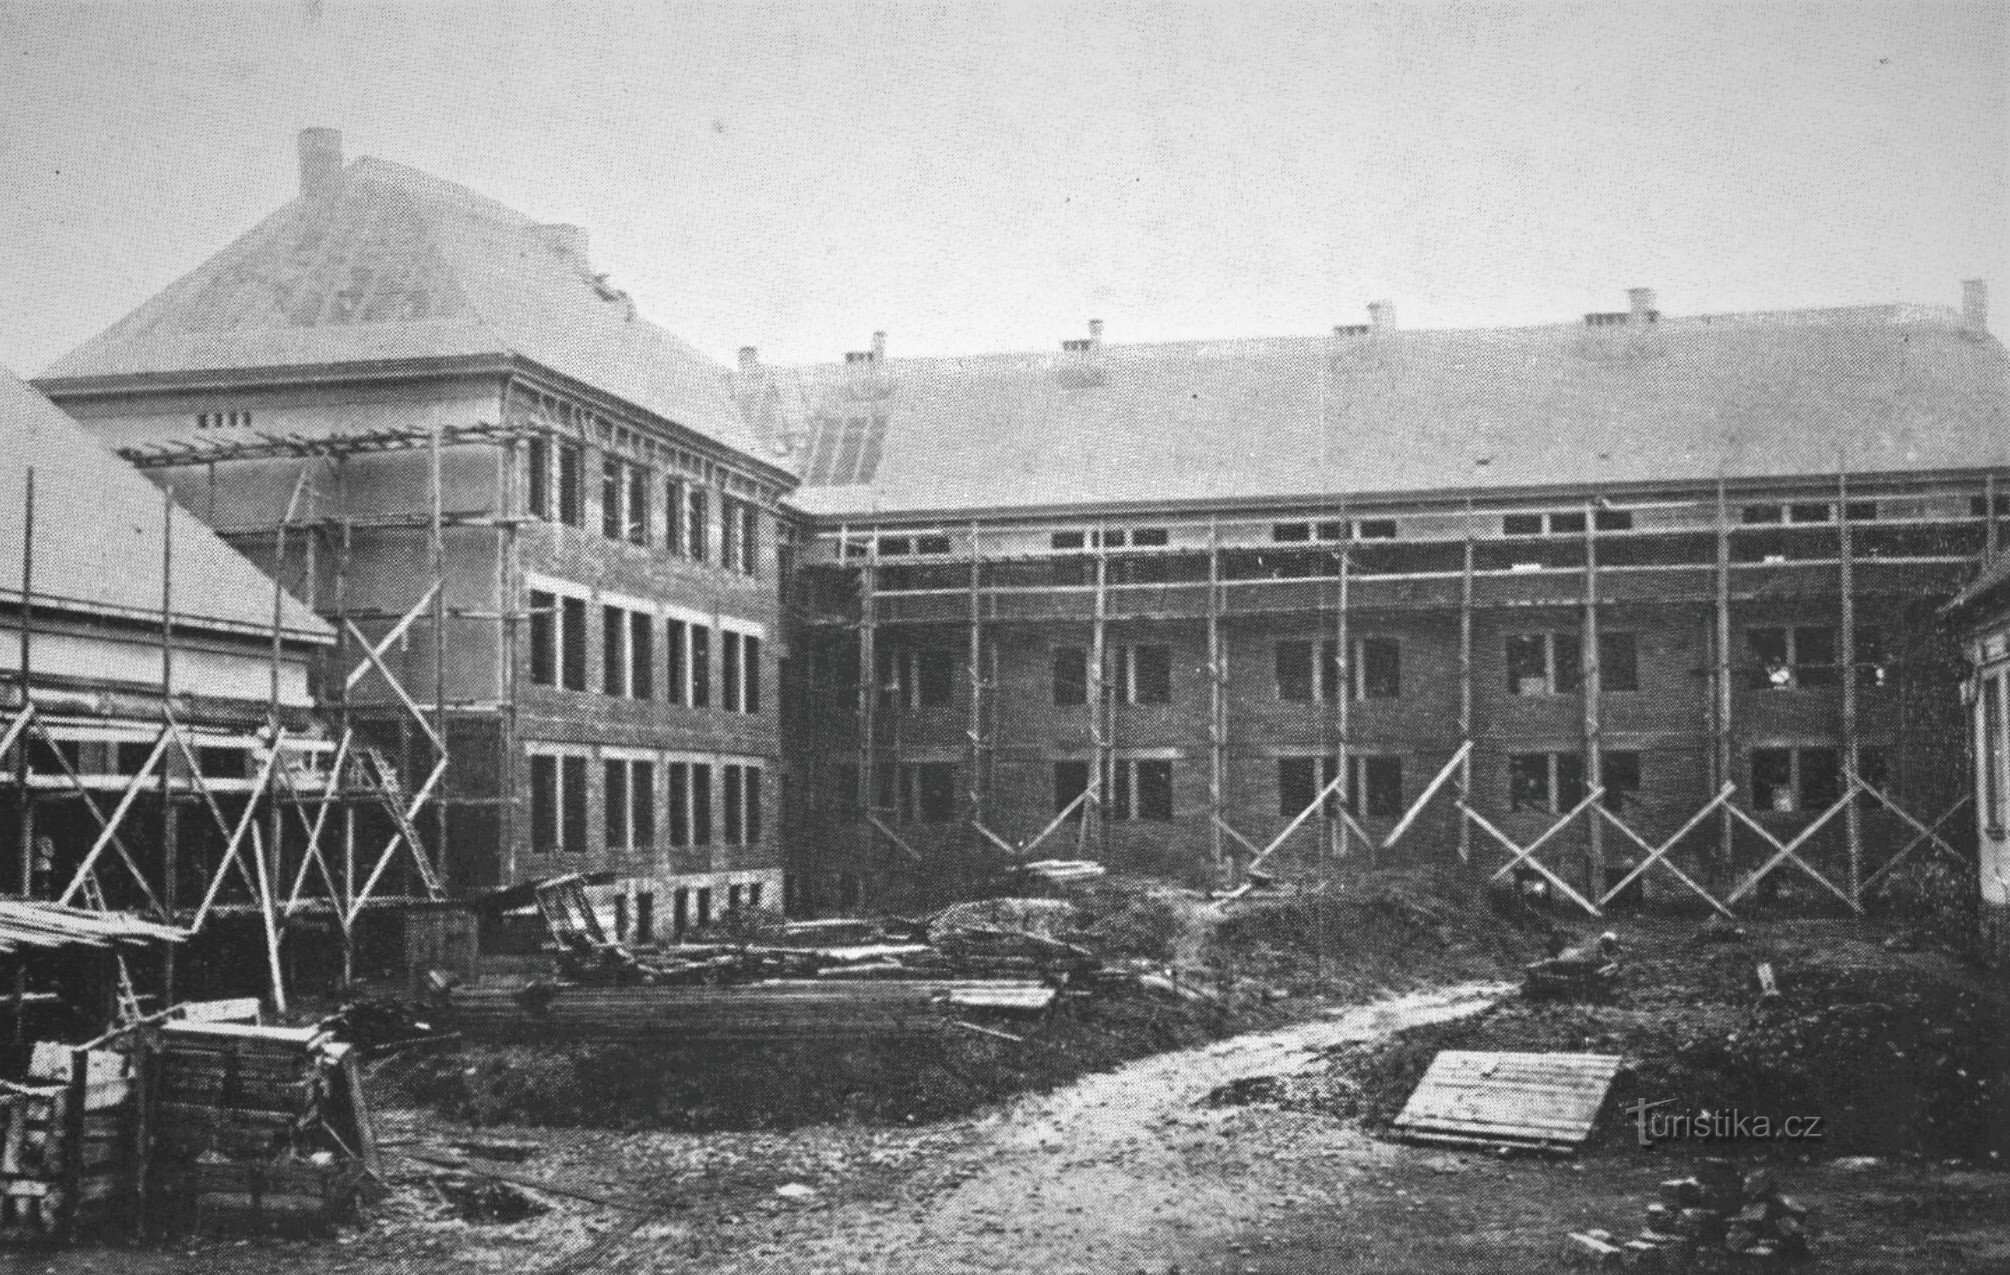 Xây dựng bất động sản Trutnov (1927)